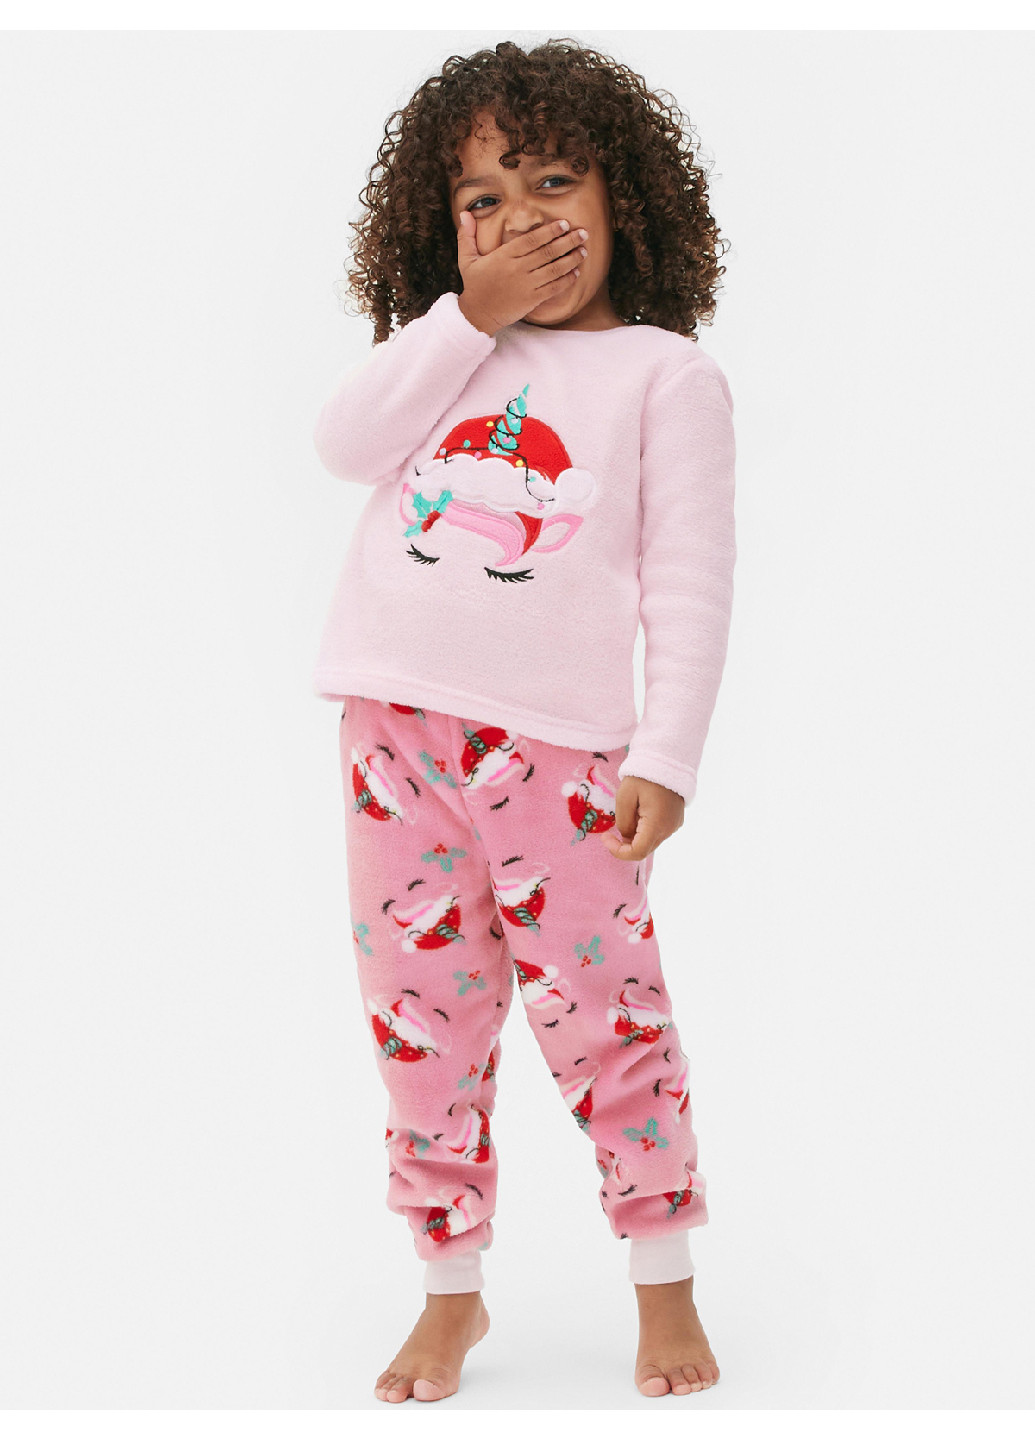 Розовая зимняя пижама (свитшот, брюки) свитшот + брюки Primark